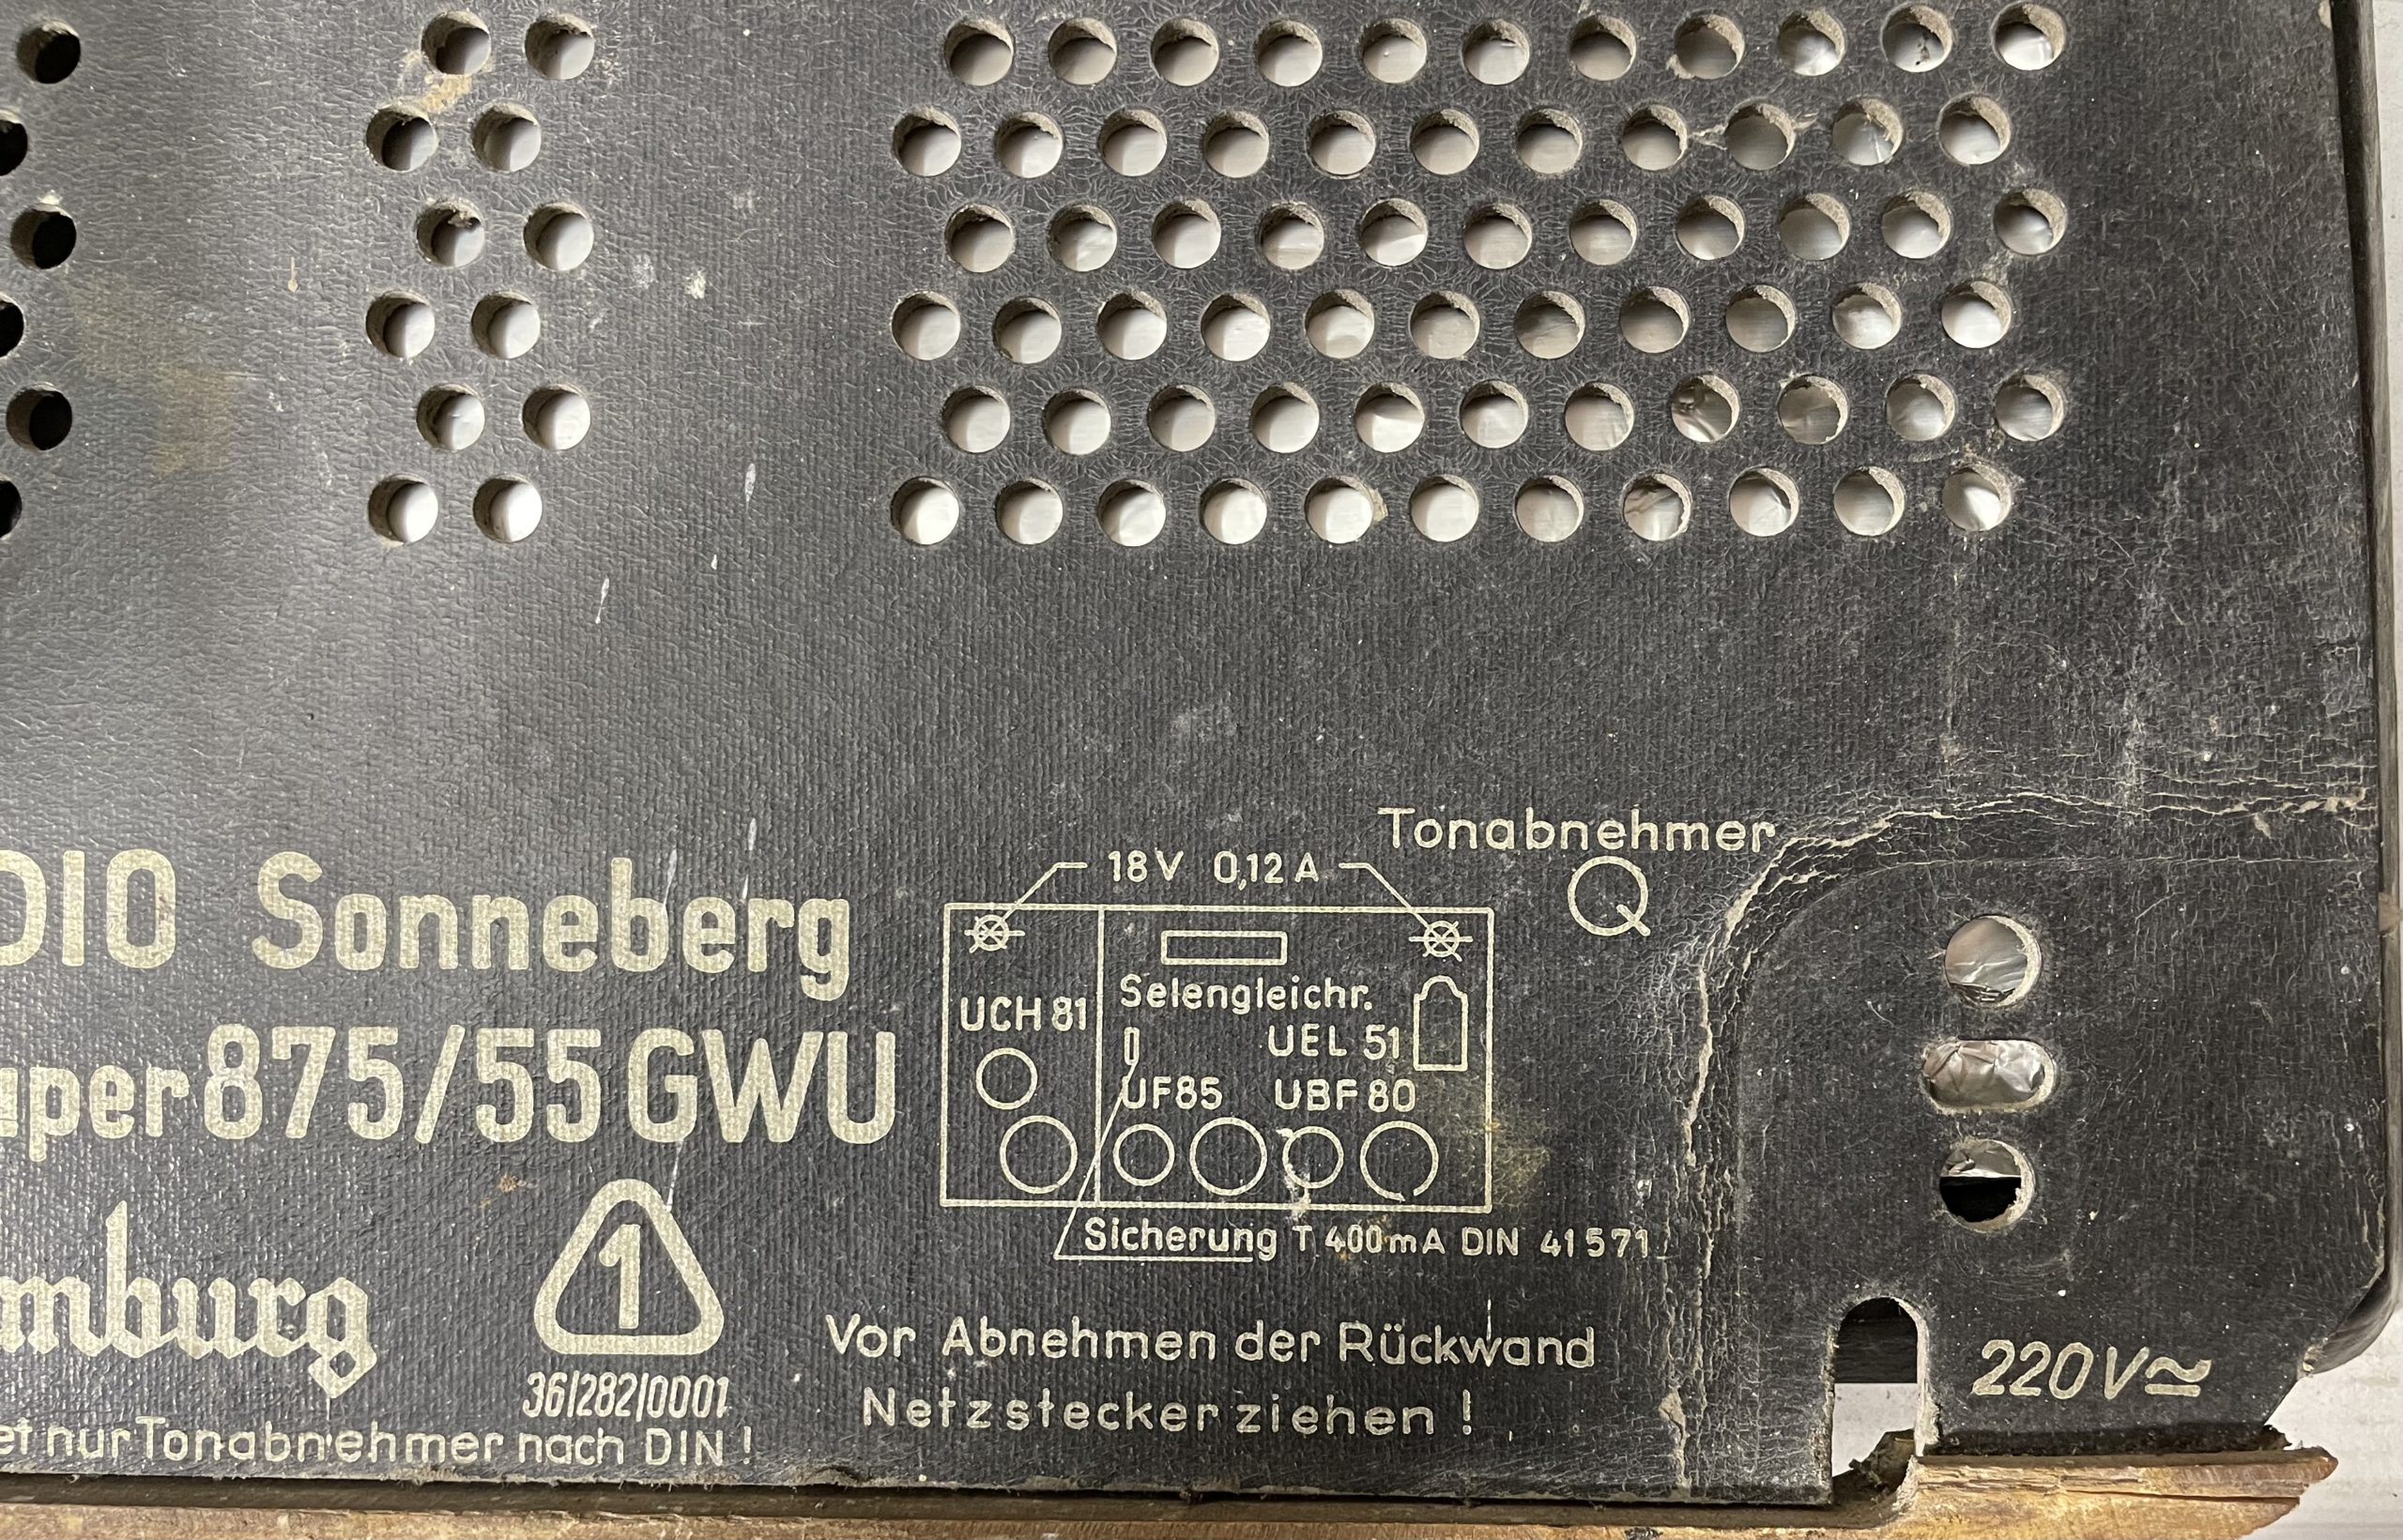 Sonneberg Naumburg 875/55GWU